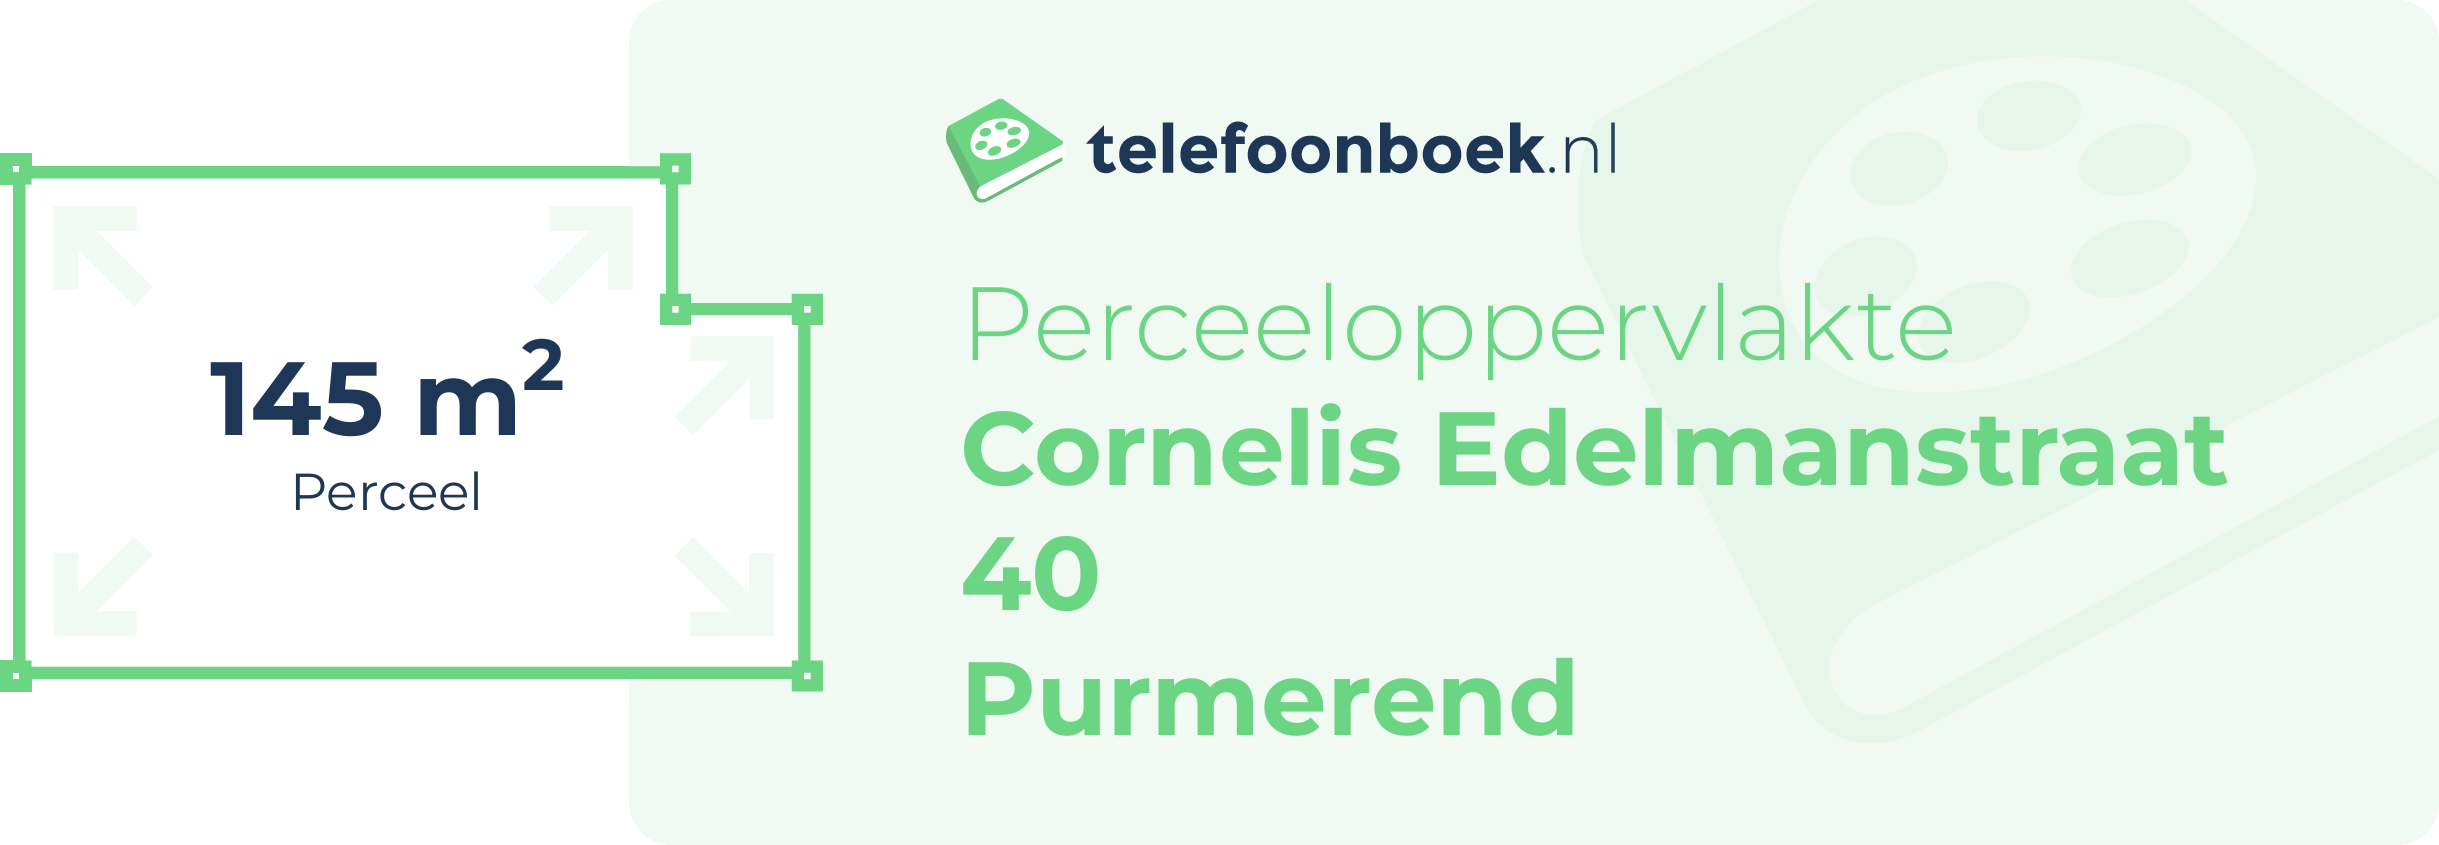 Perceeloppervlakte Cornelis Edelmanstraat 40 Purmerend